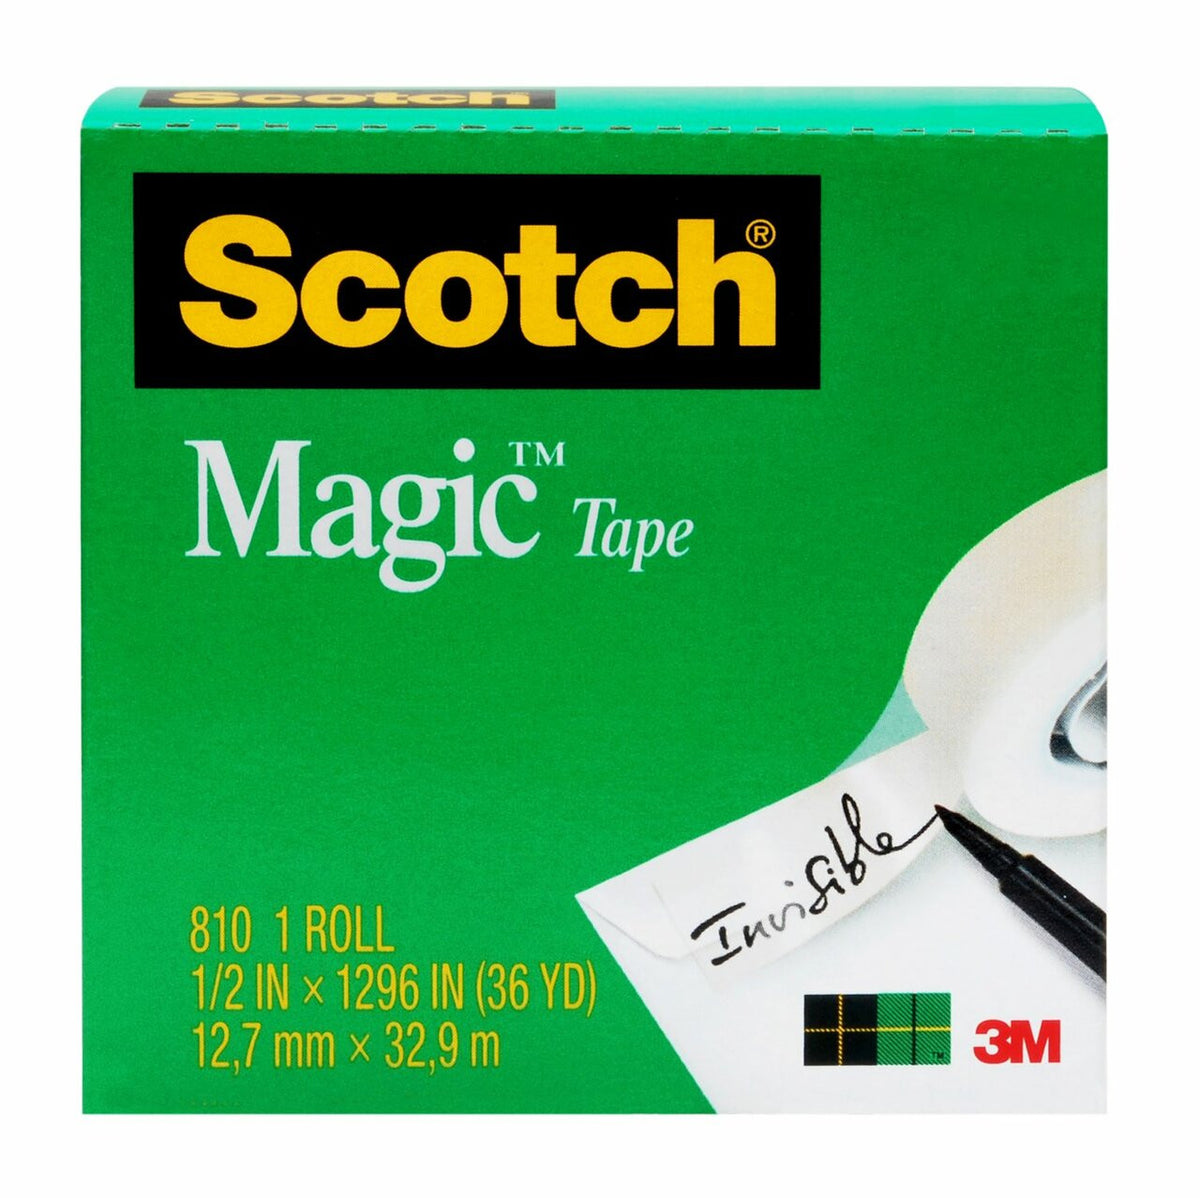 SCOTCH 810 MAGIC TAPE 12MM X 33M REFILL CLEAR ROLL